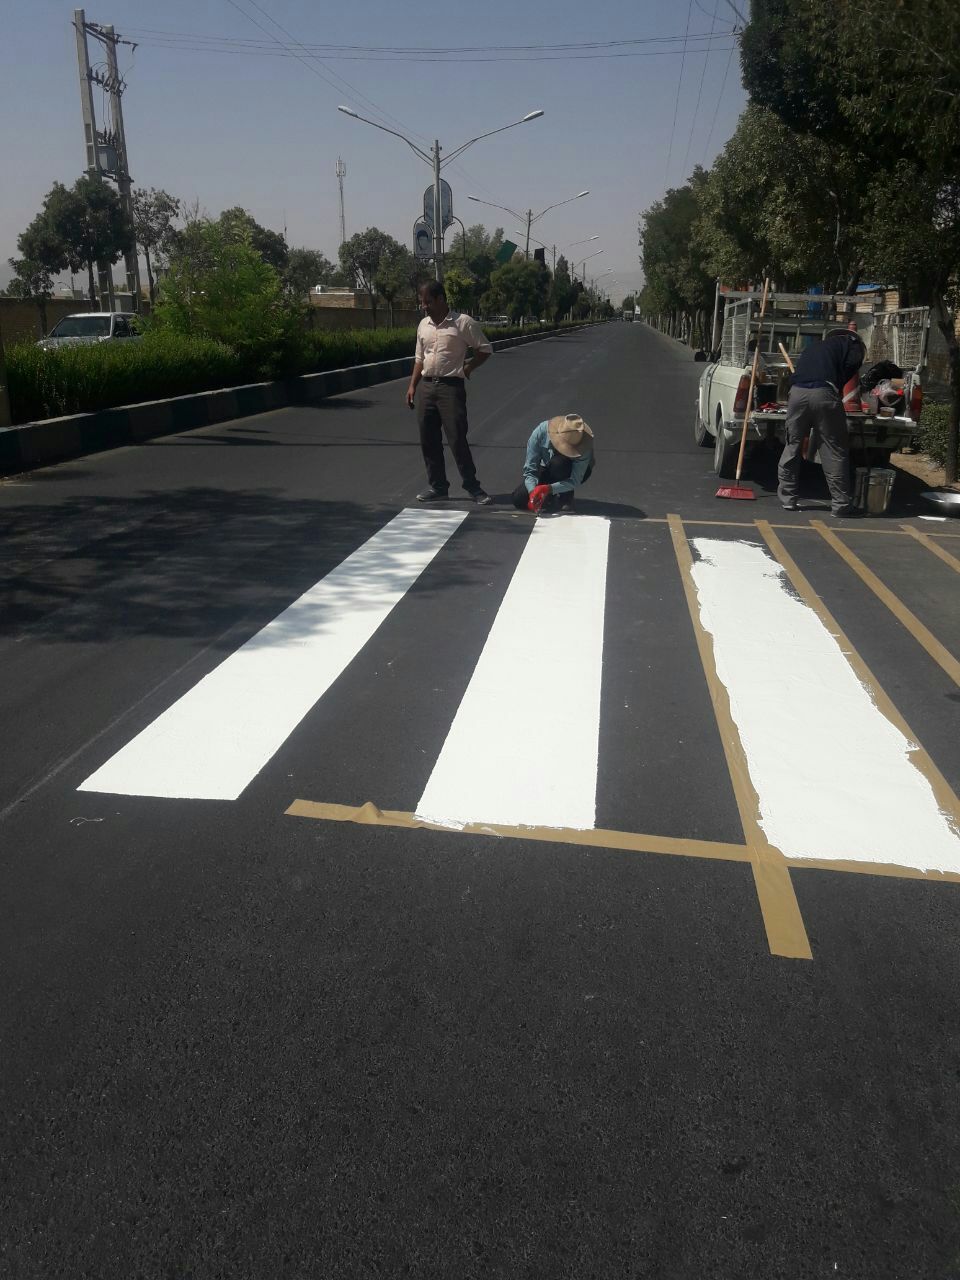 رنگ آمیزی محل های عبور عابران پیاده دربلوارشهید بهشتی . ۲۱ شهریور ۹۷